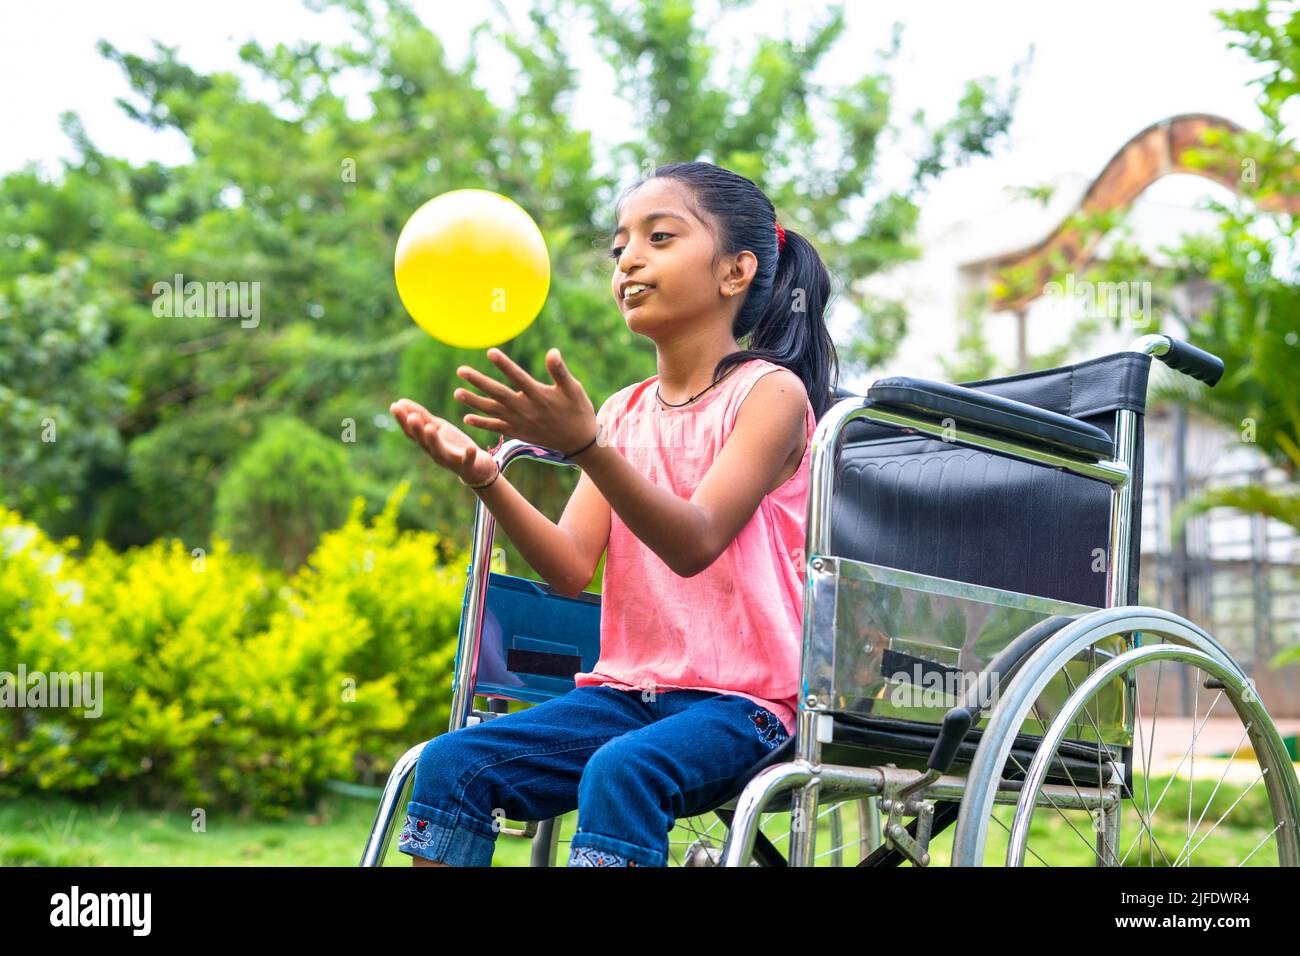 Concepto de felicidad, libertad y disfrute Mostrando sonriendo sola niña con discapacidad jugando con pelota mientras está en silla de ruedas en el parque. Foto de stock